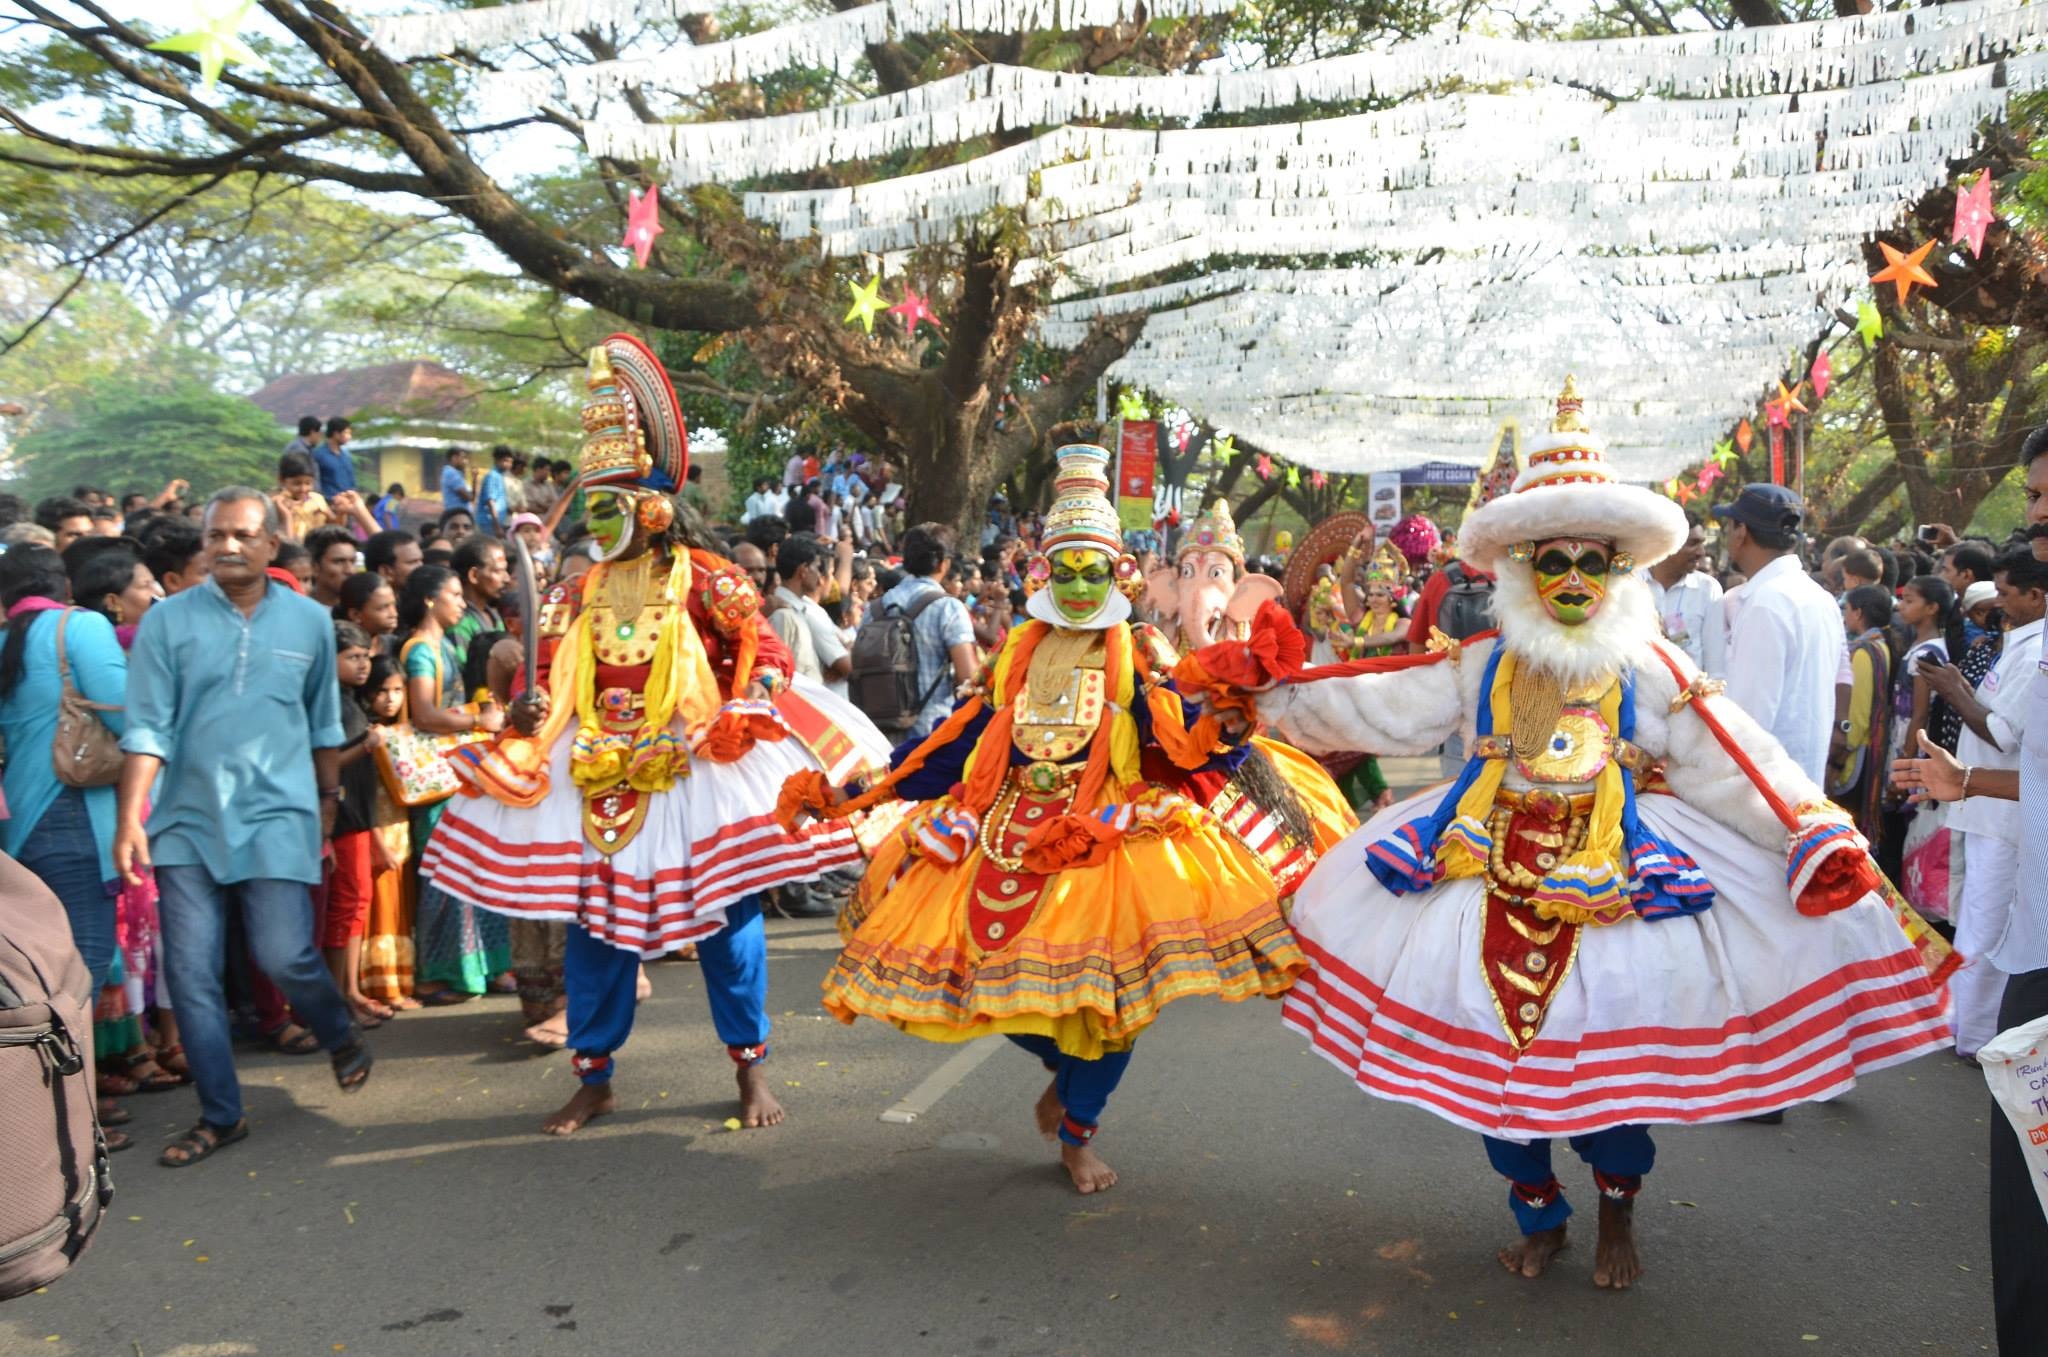 The Cochin Carnival